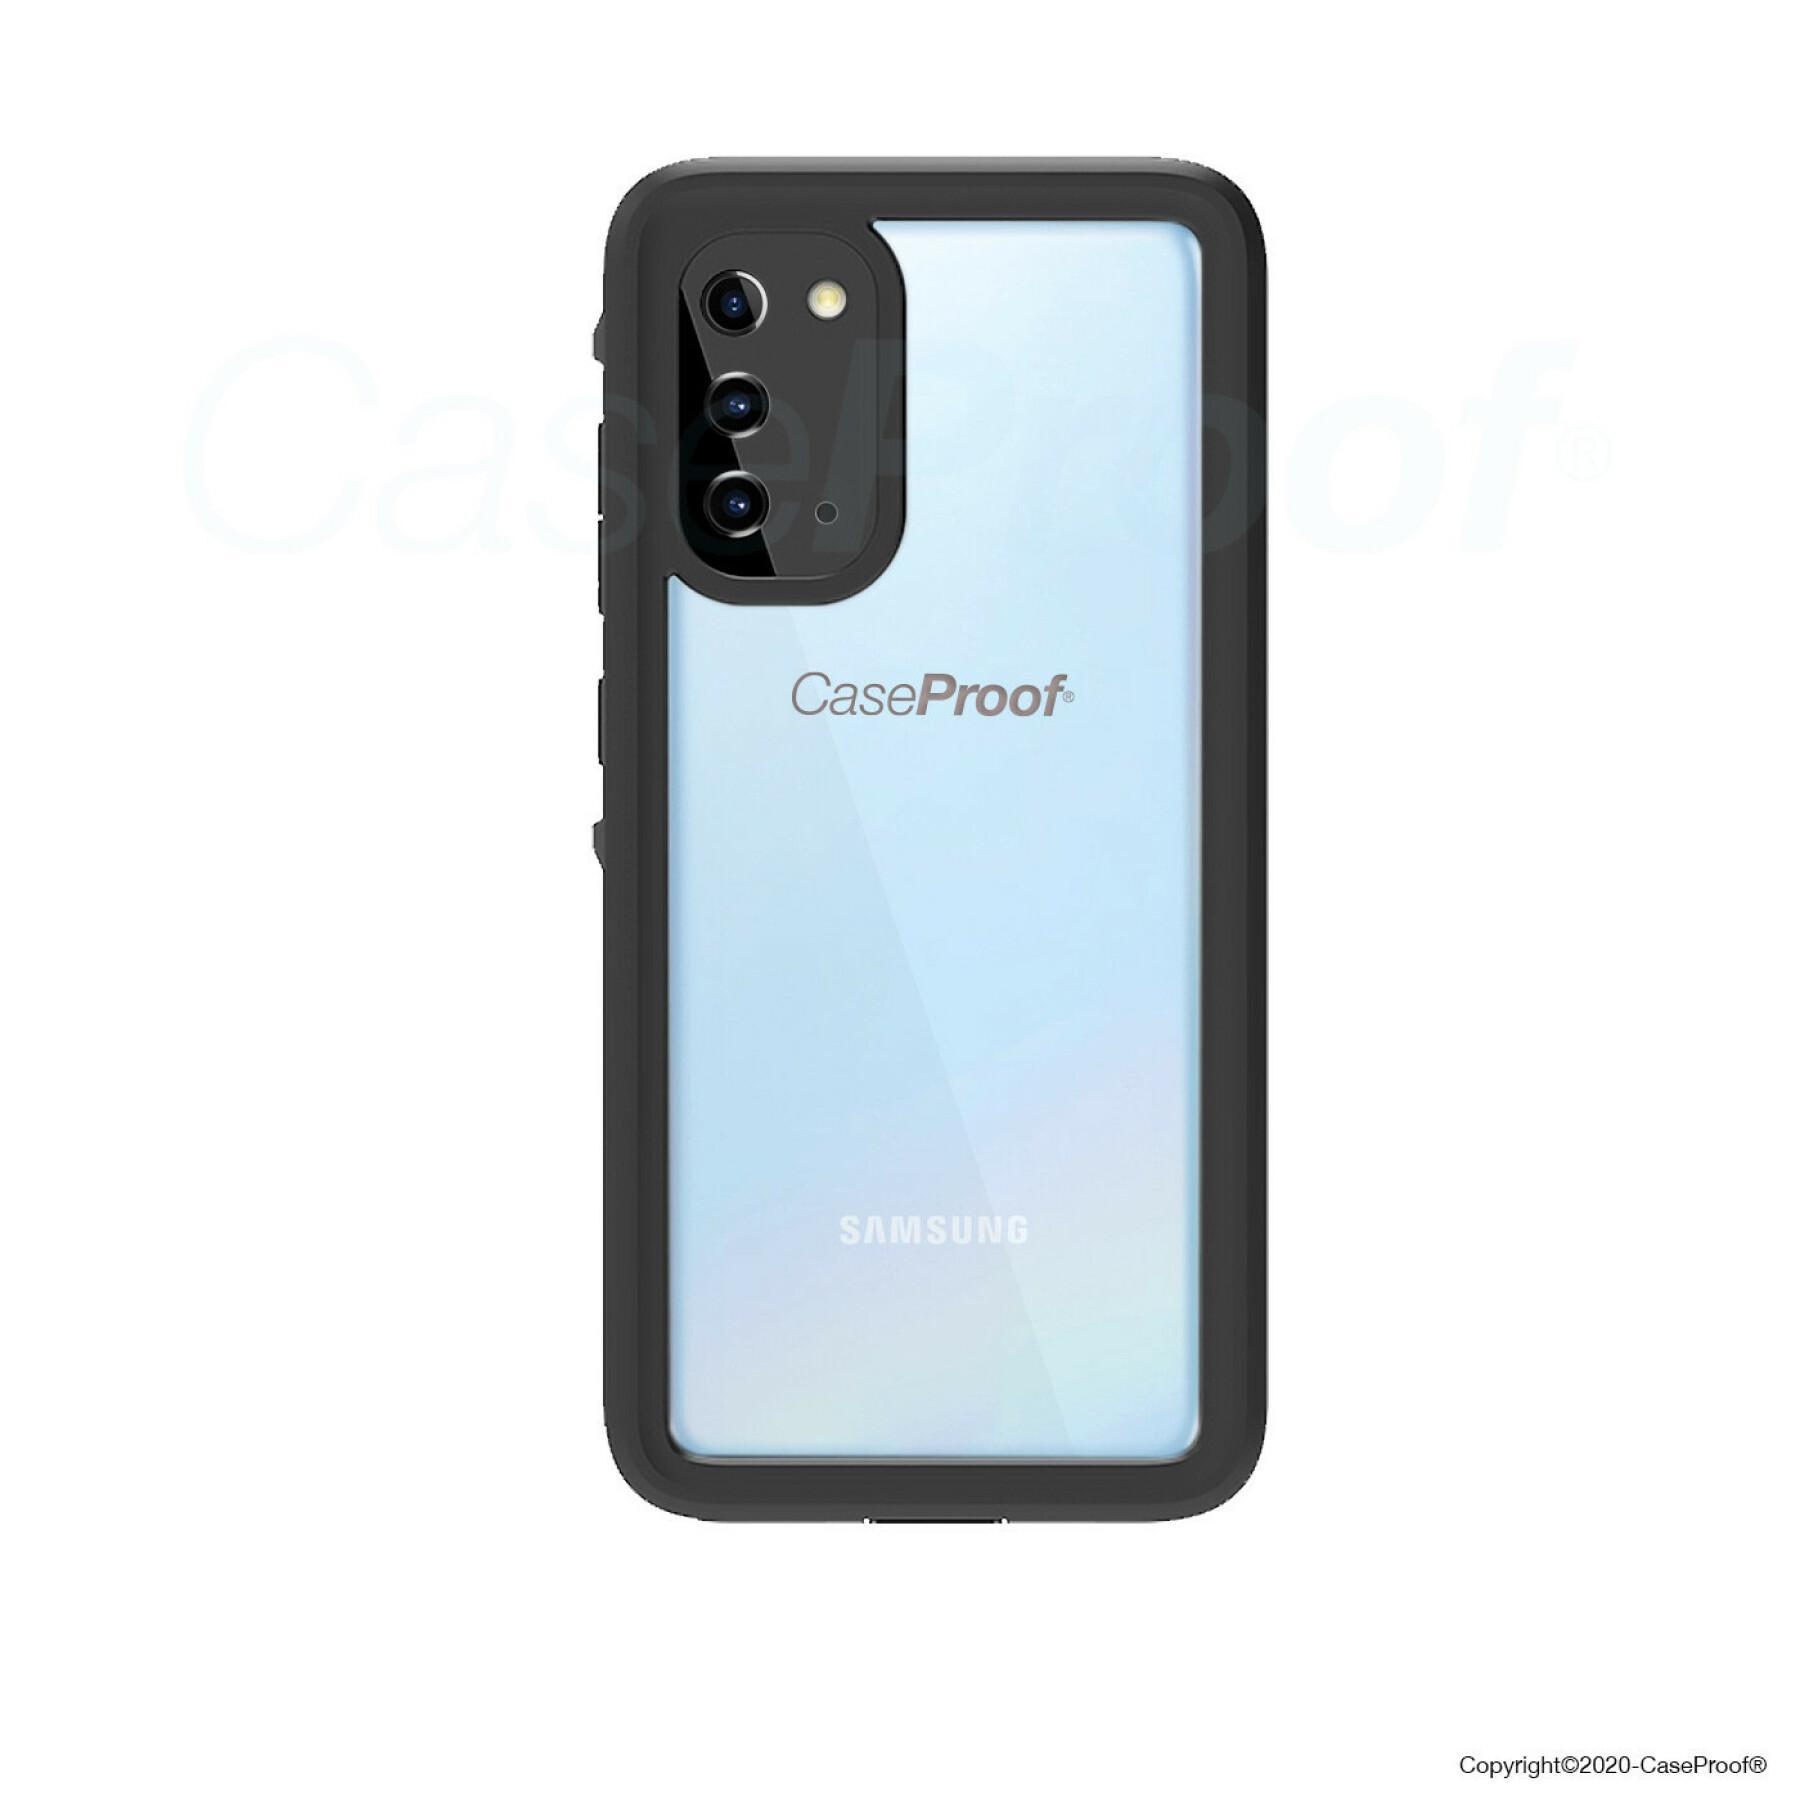 Coque smartphone Samsung Galaxy S 20 étanche et antichoc waterproof CaseProof